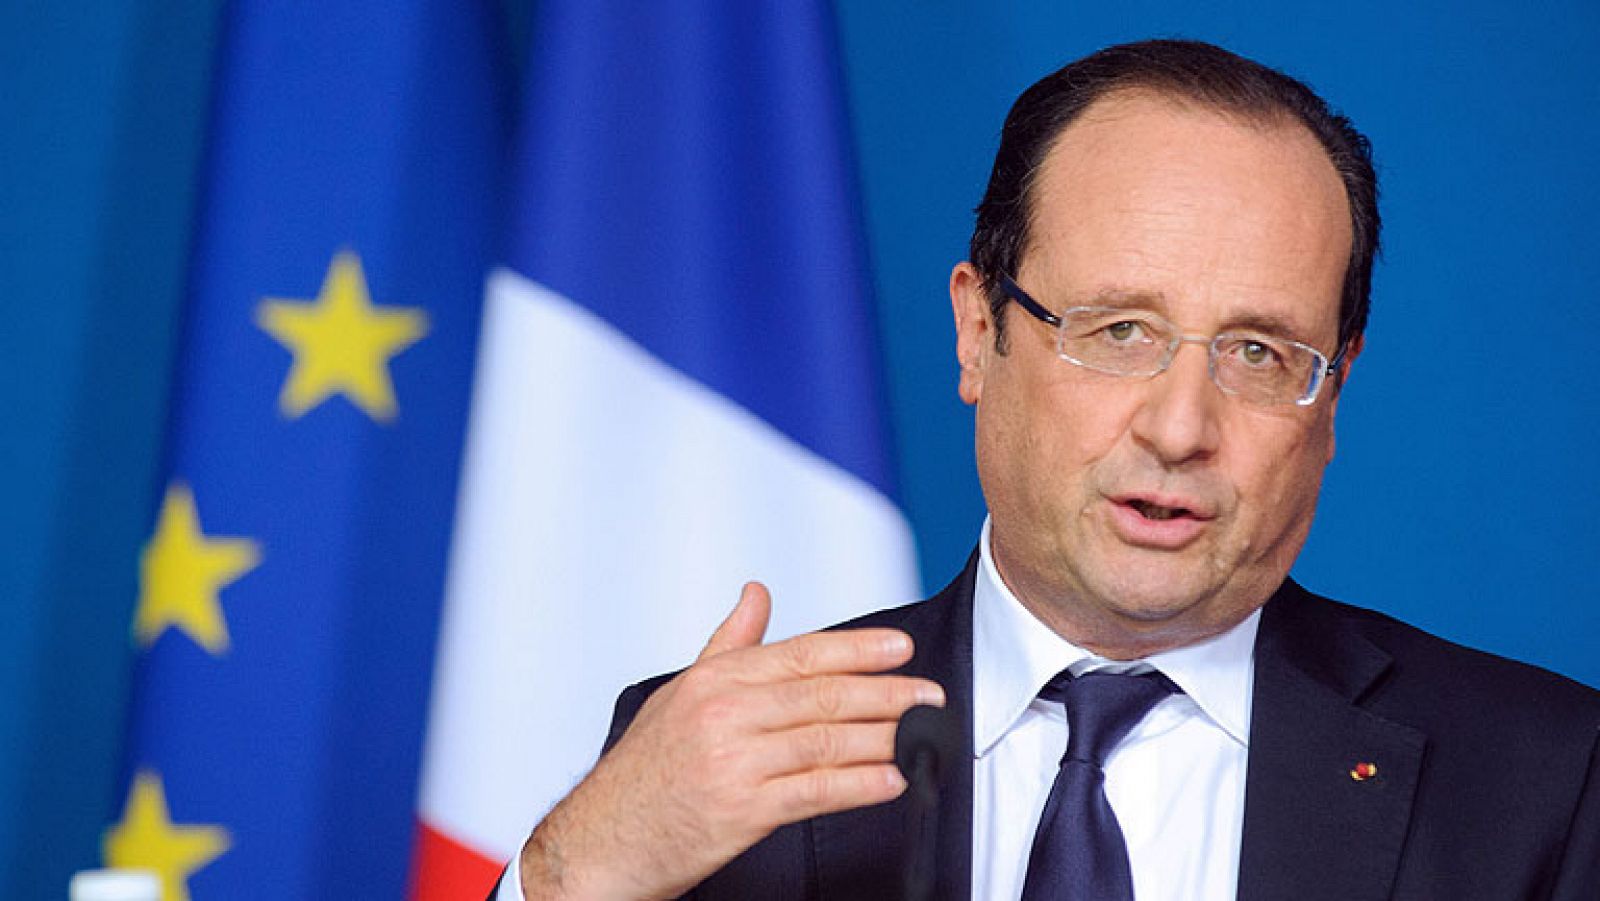 El presidente de Francia, François Hollande, cumple este lunes su primer año de mandato al frente del Elíseo diezmado por la crisis económica y por un nivel de impopularidad que ha caído a mínimos históricos.